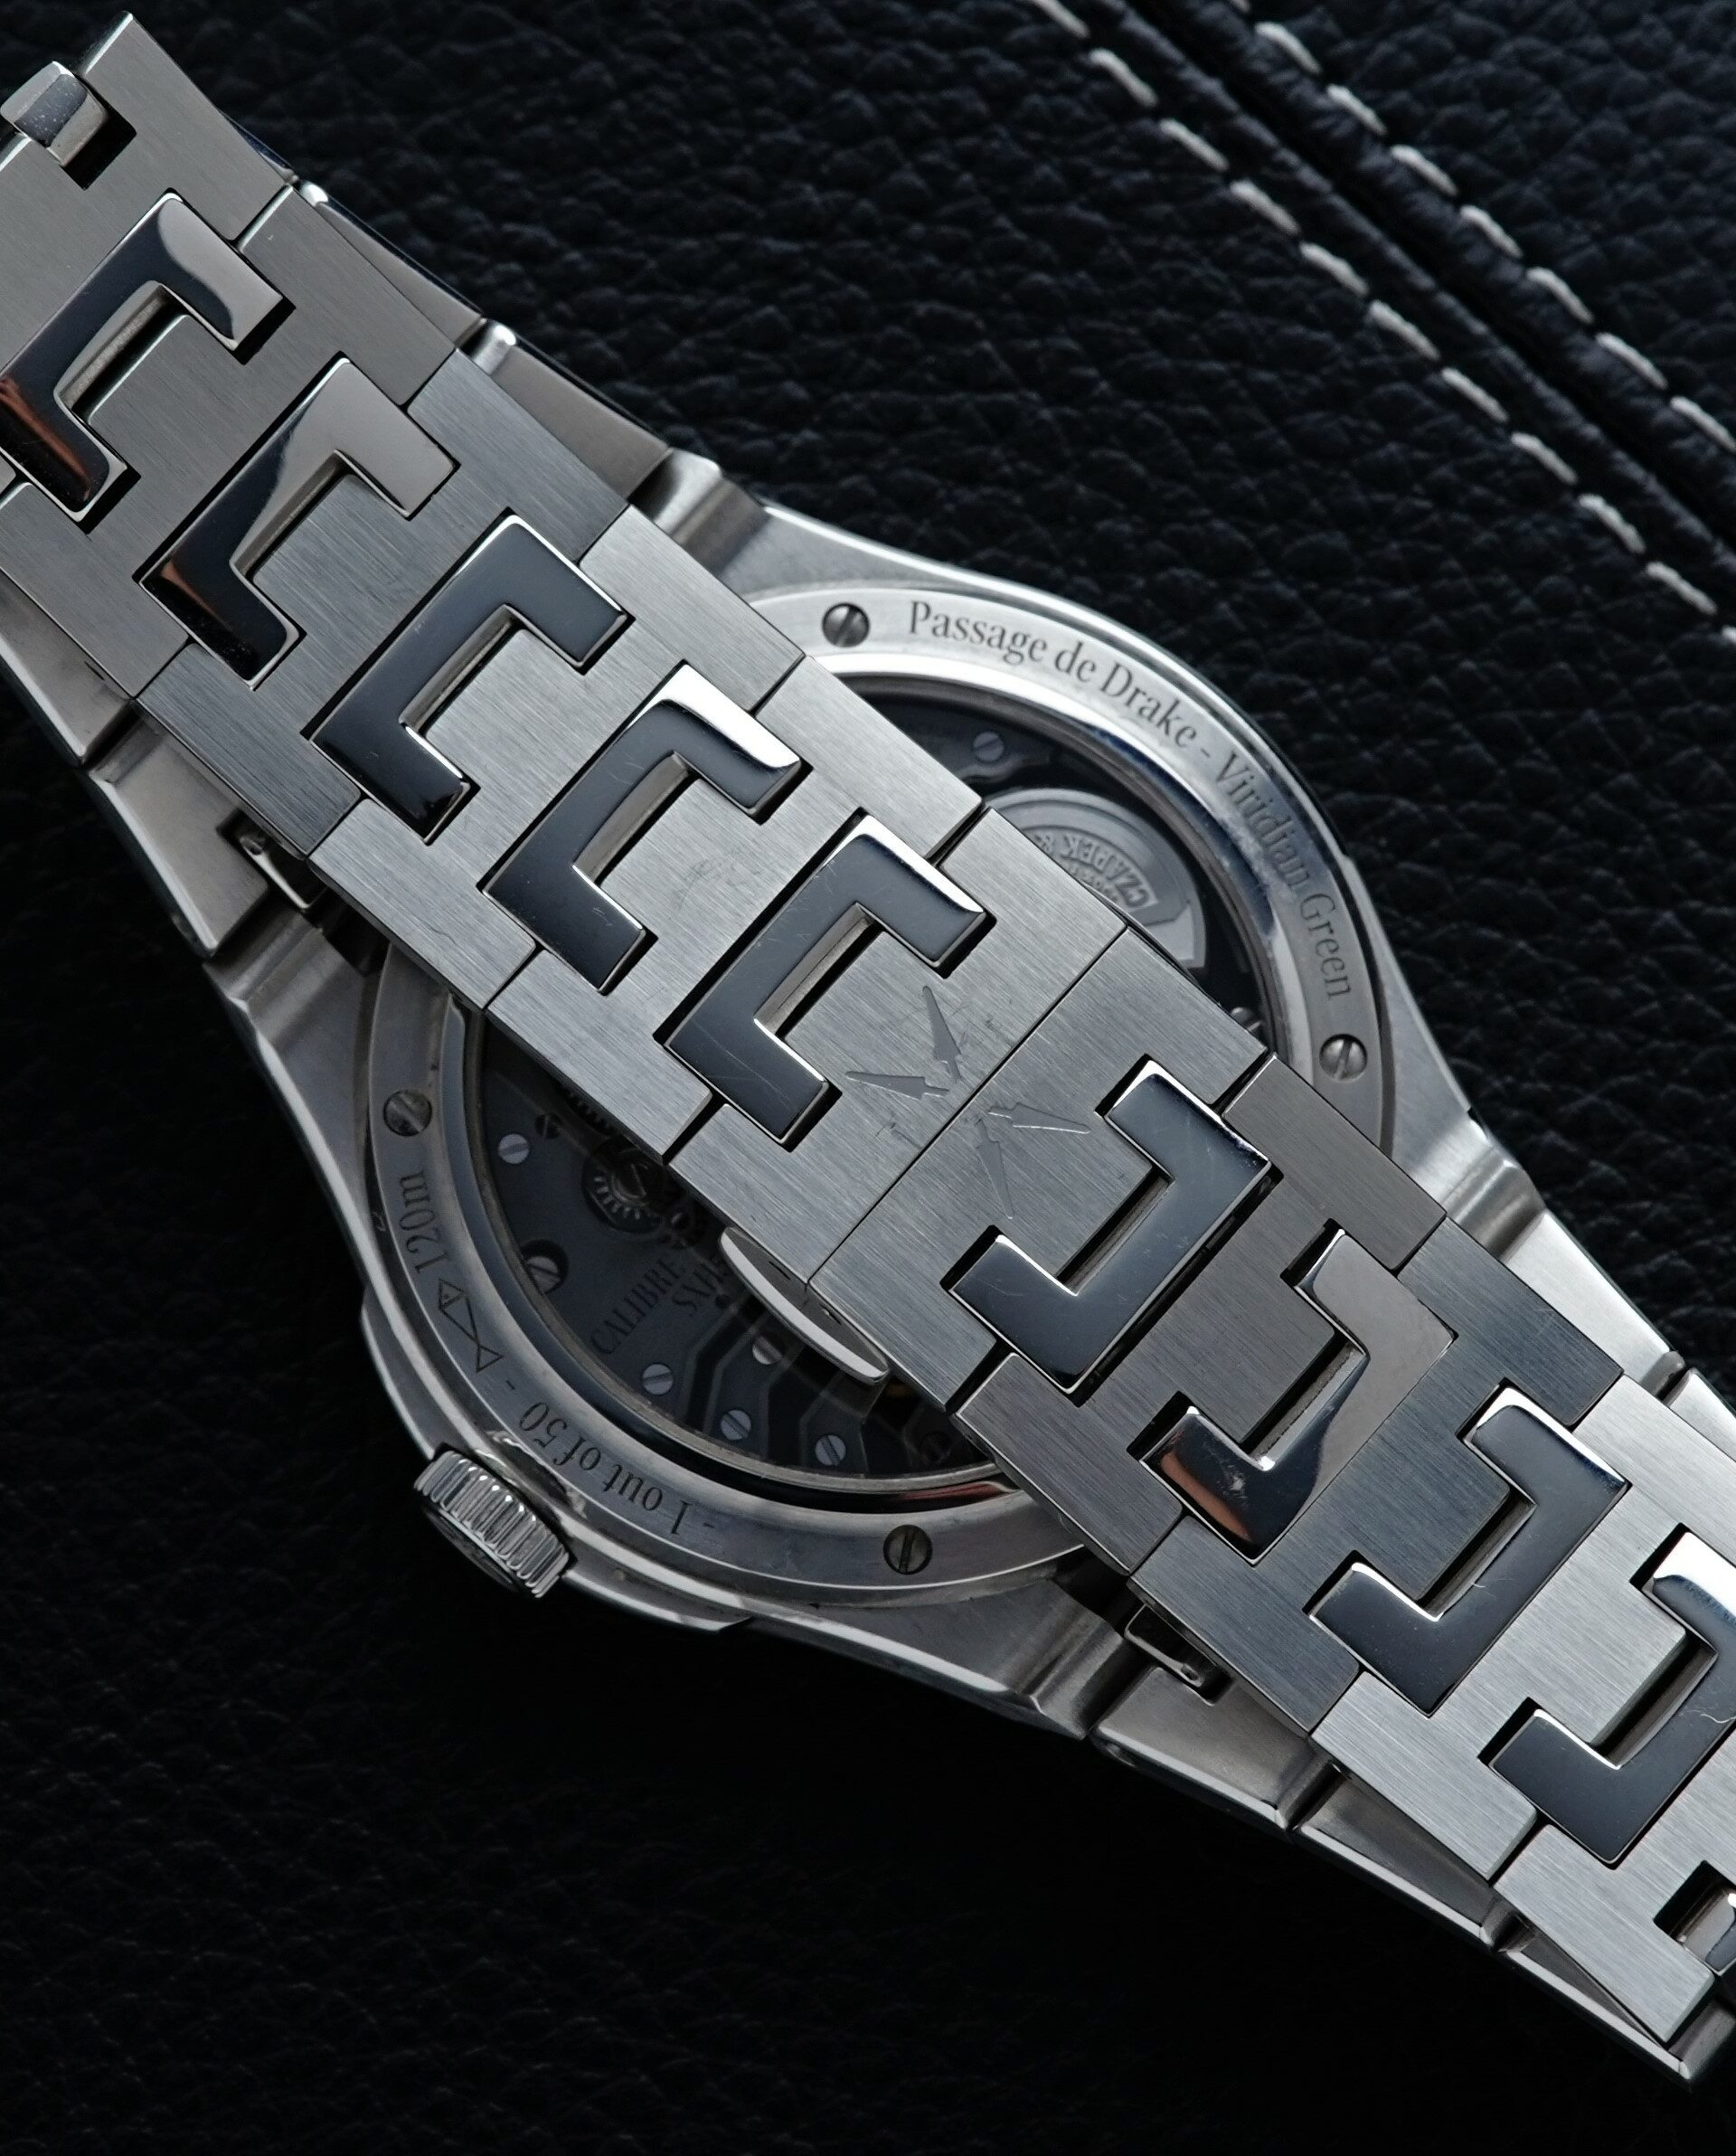 Backside and bracelet for the Czapek Fratello x Czapek Antarctique Passage de Drake Limited watch.